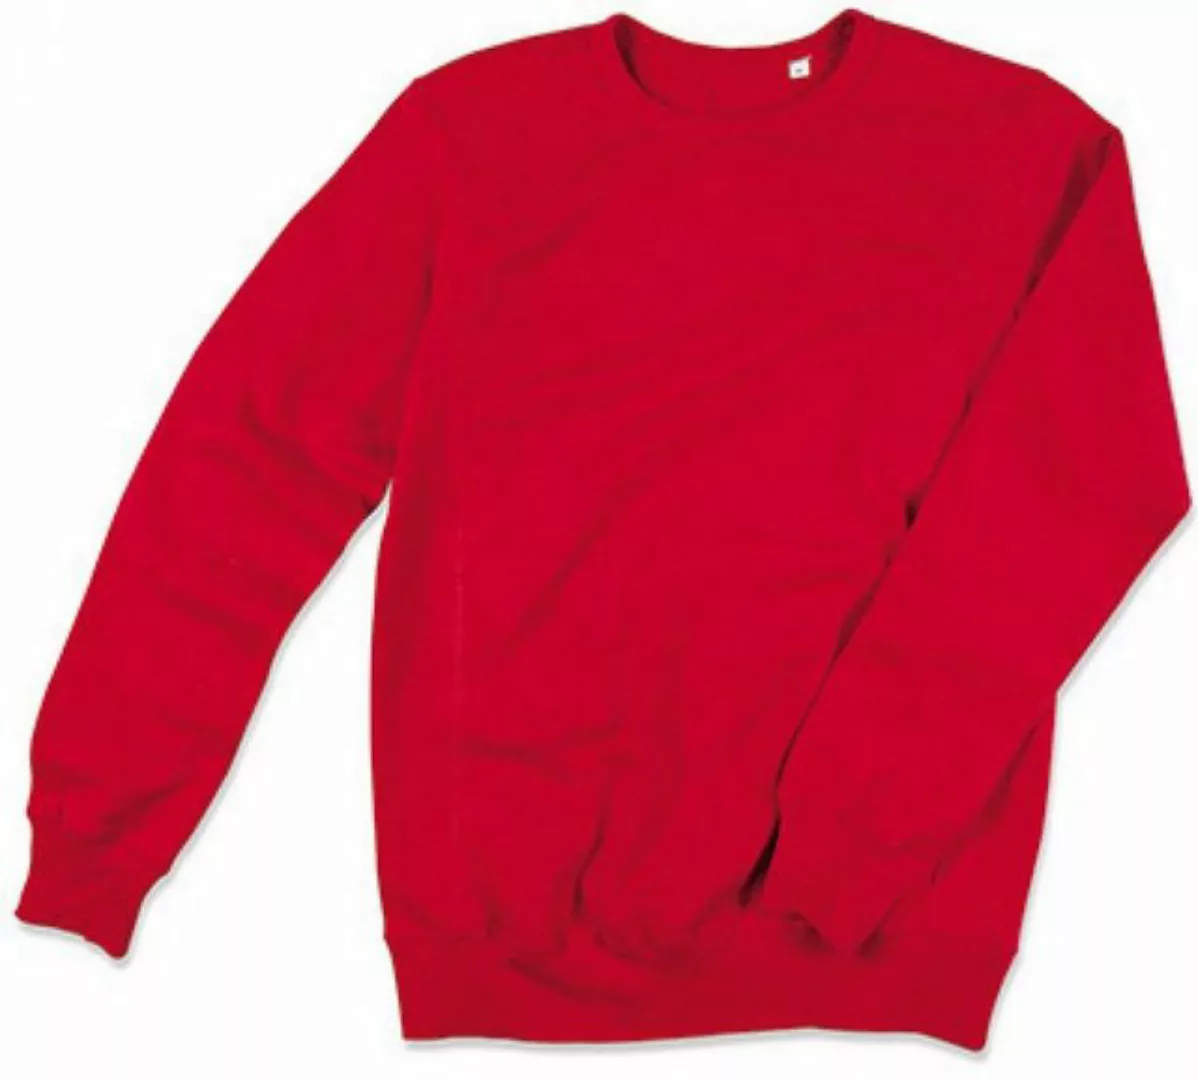 Stedman Sweatshirt Active Sweatshirt günstig online kaufen